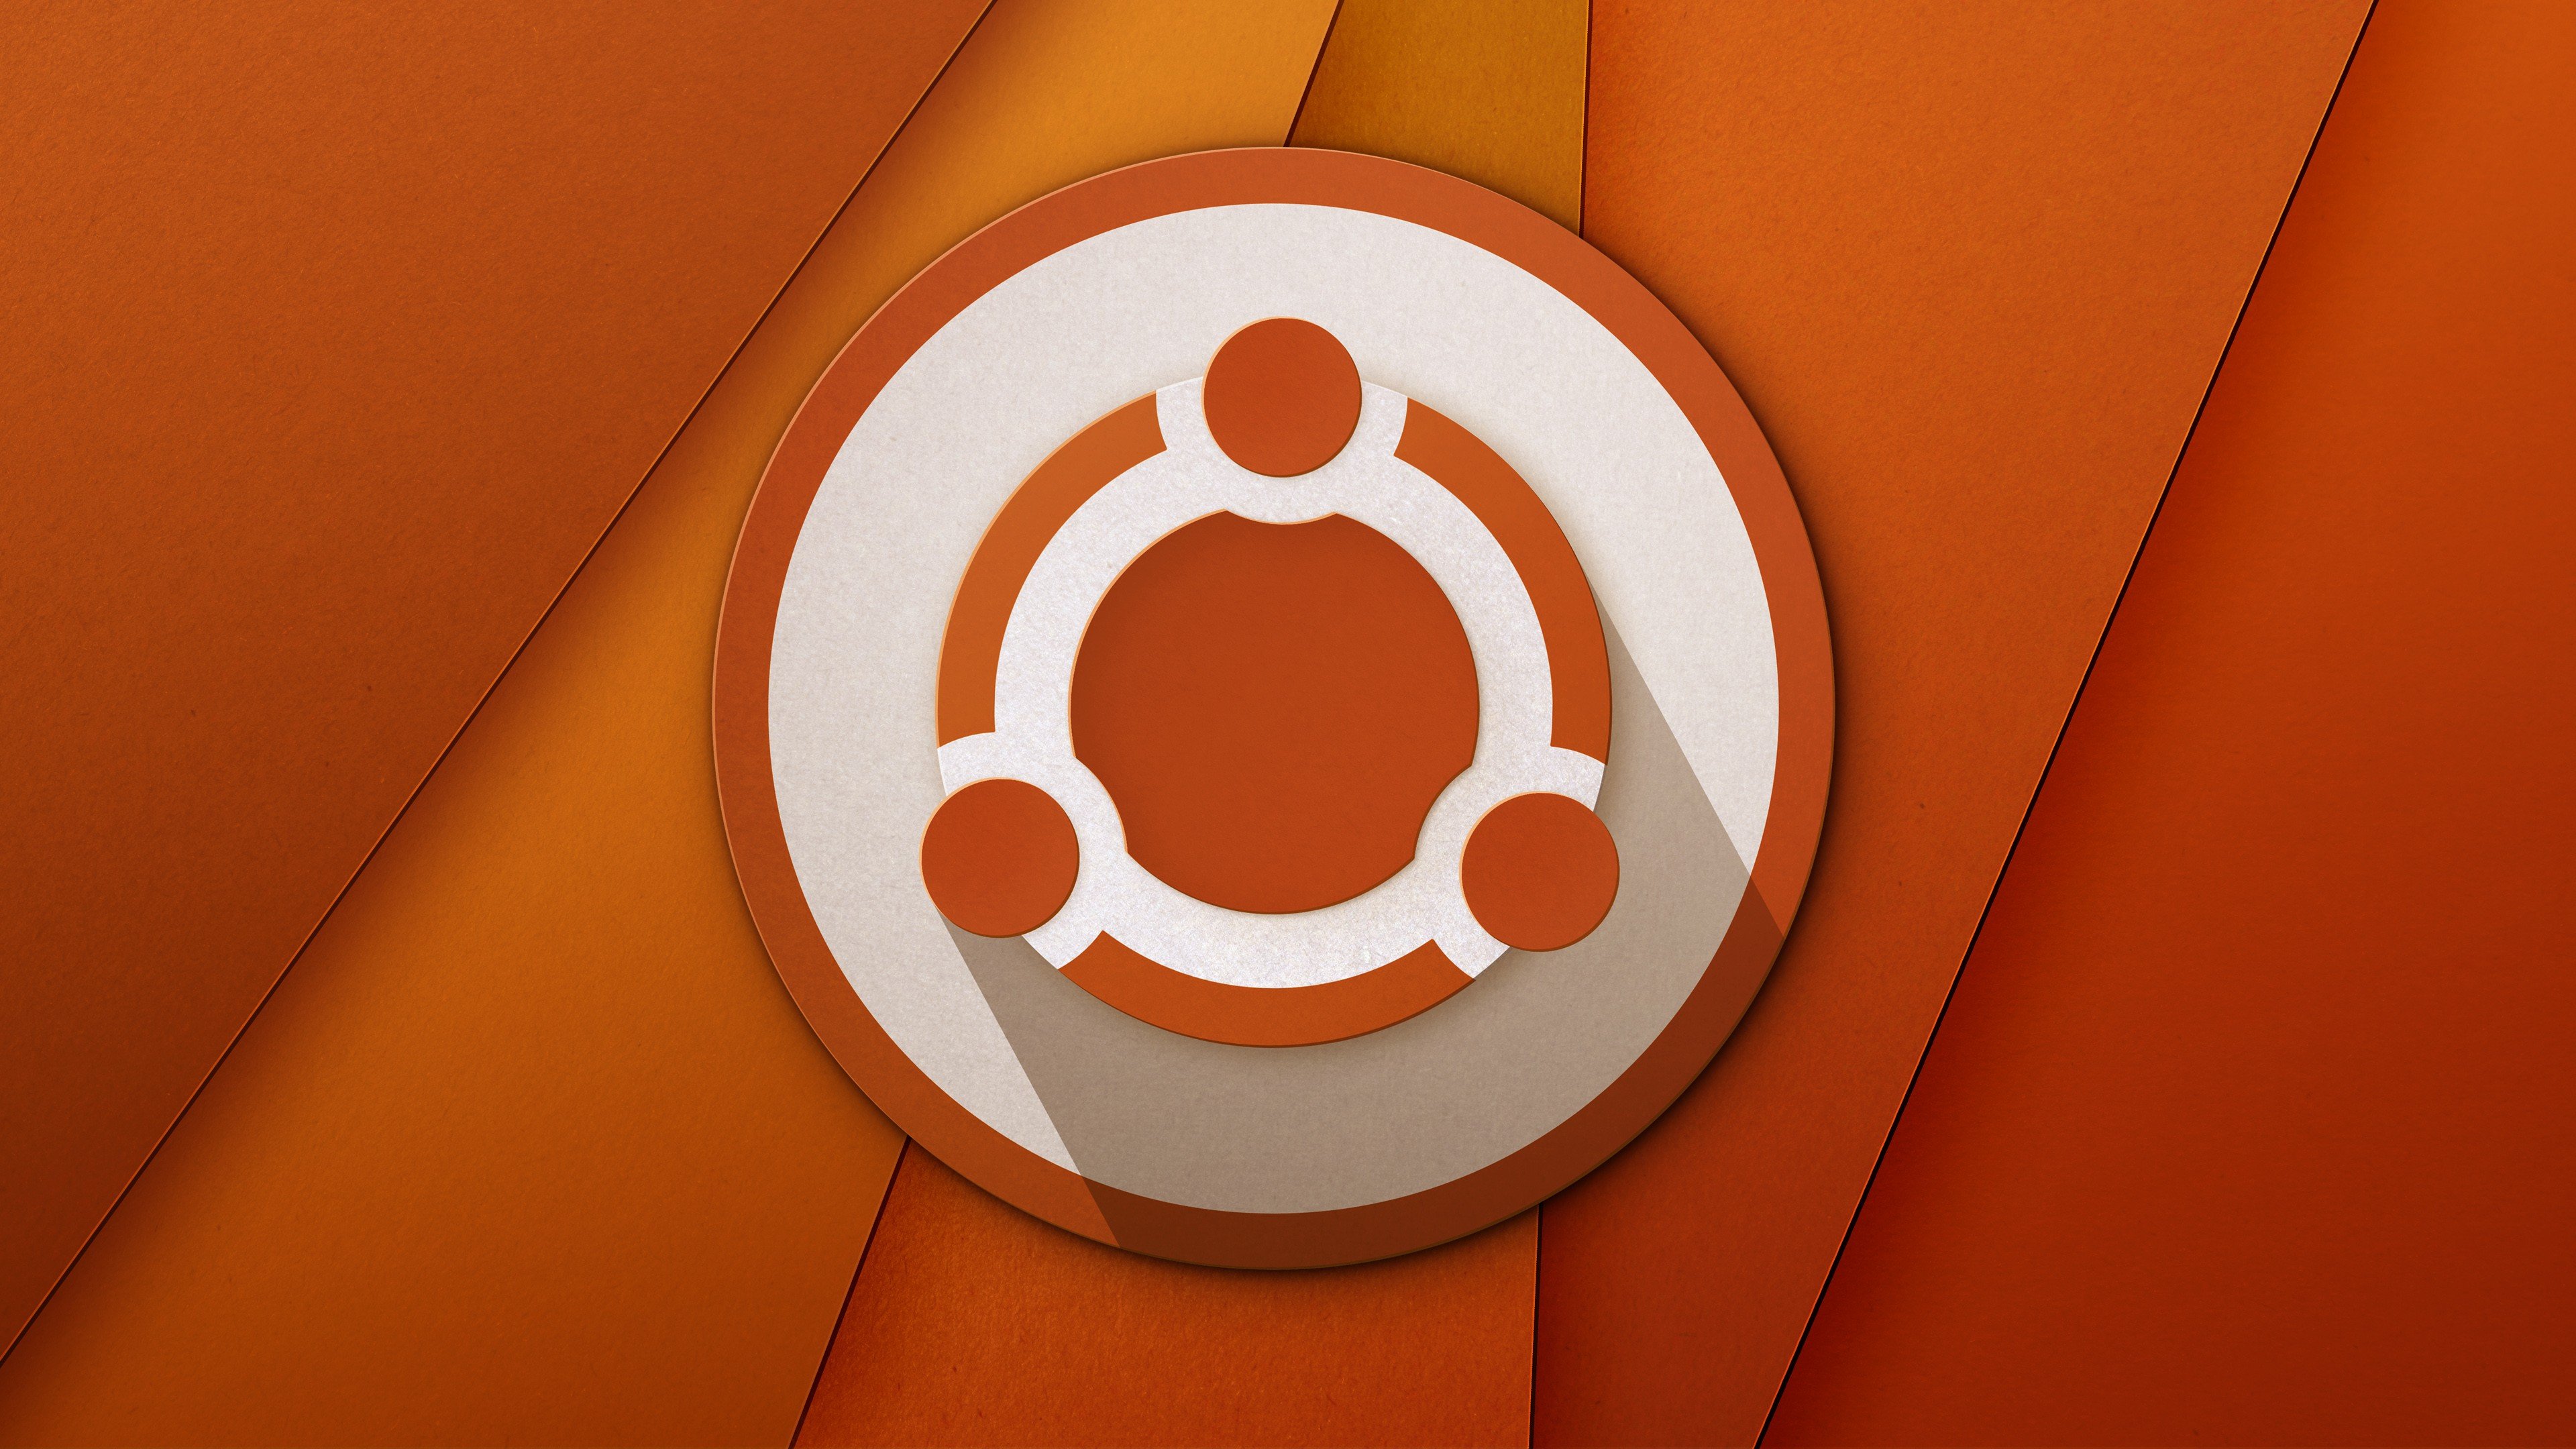 download ubuntu 14.04 free